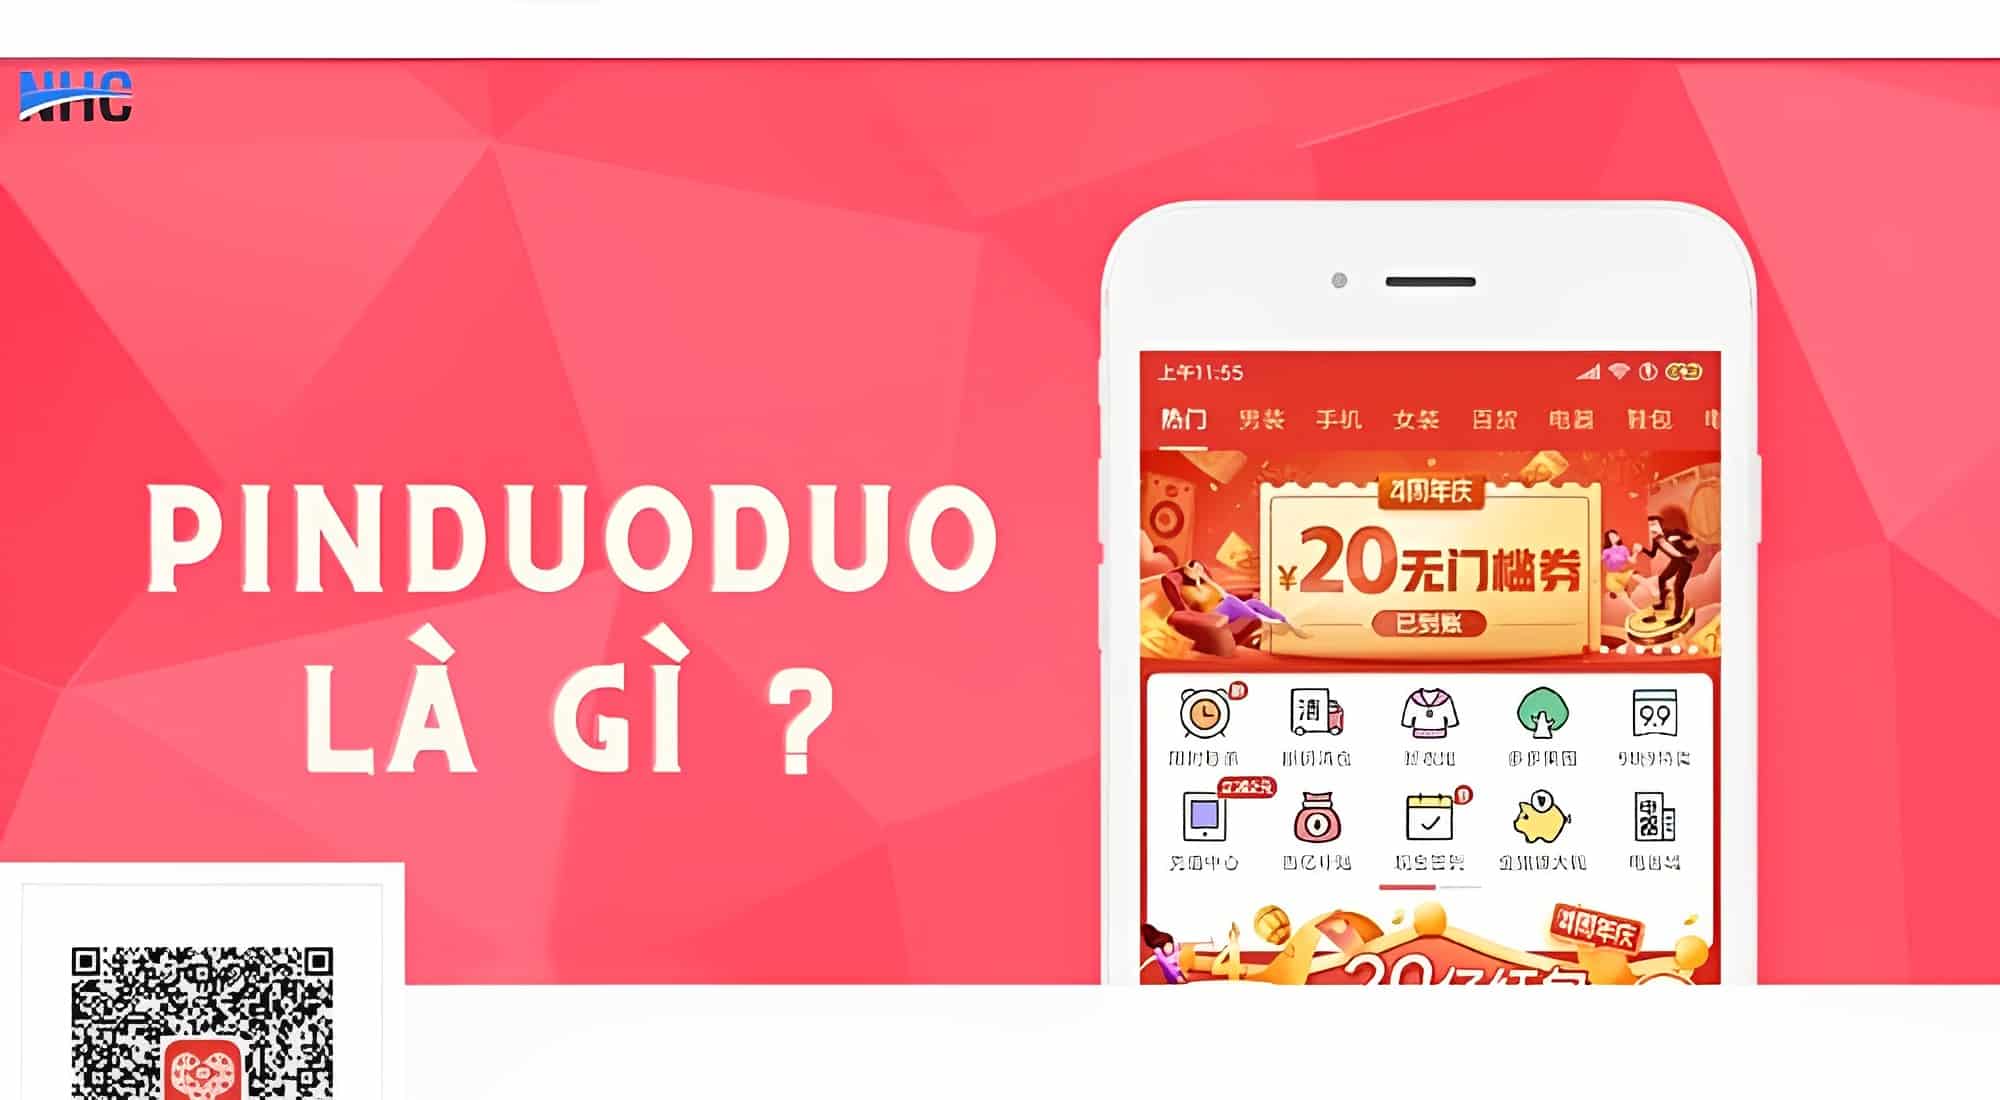 Pinduoduo là một ứng dụng bán lẻ đầy sáng tạo và khác biệt